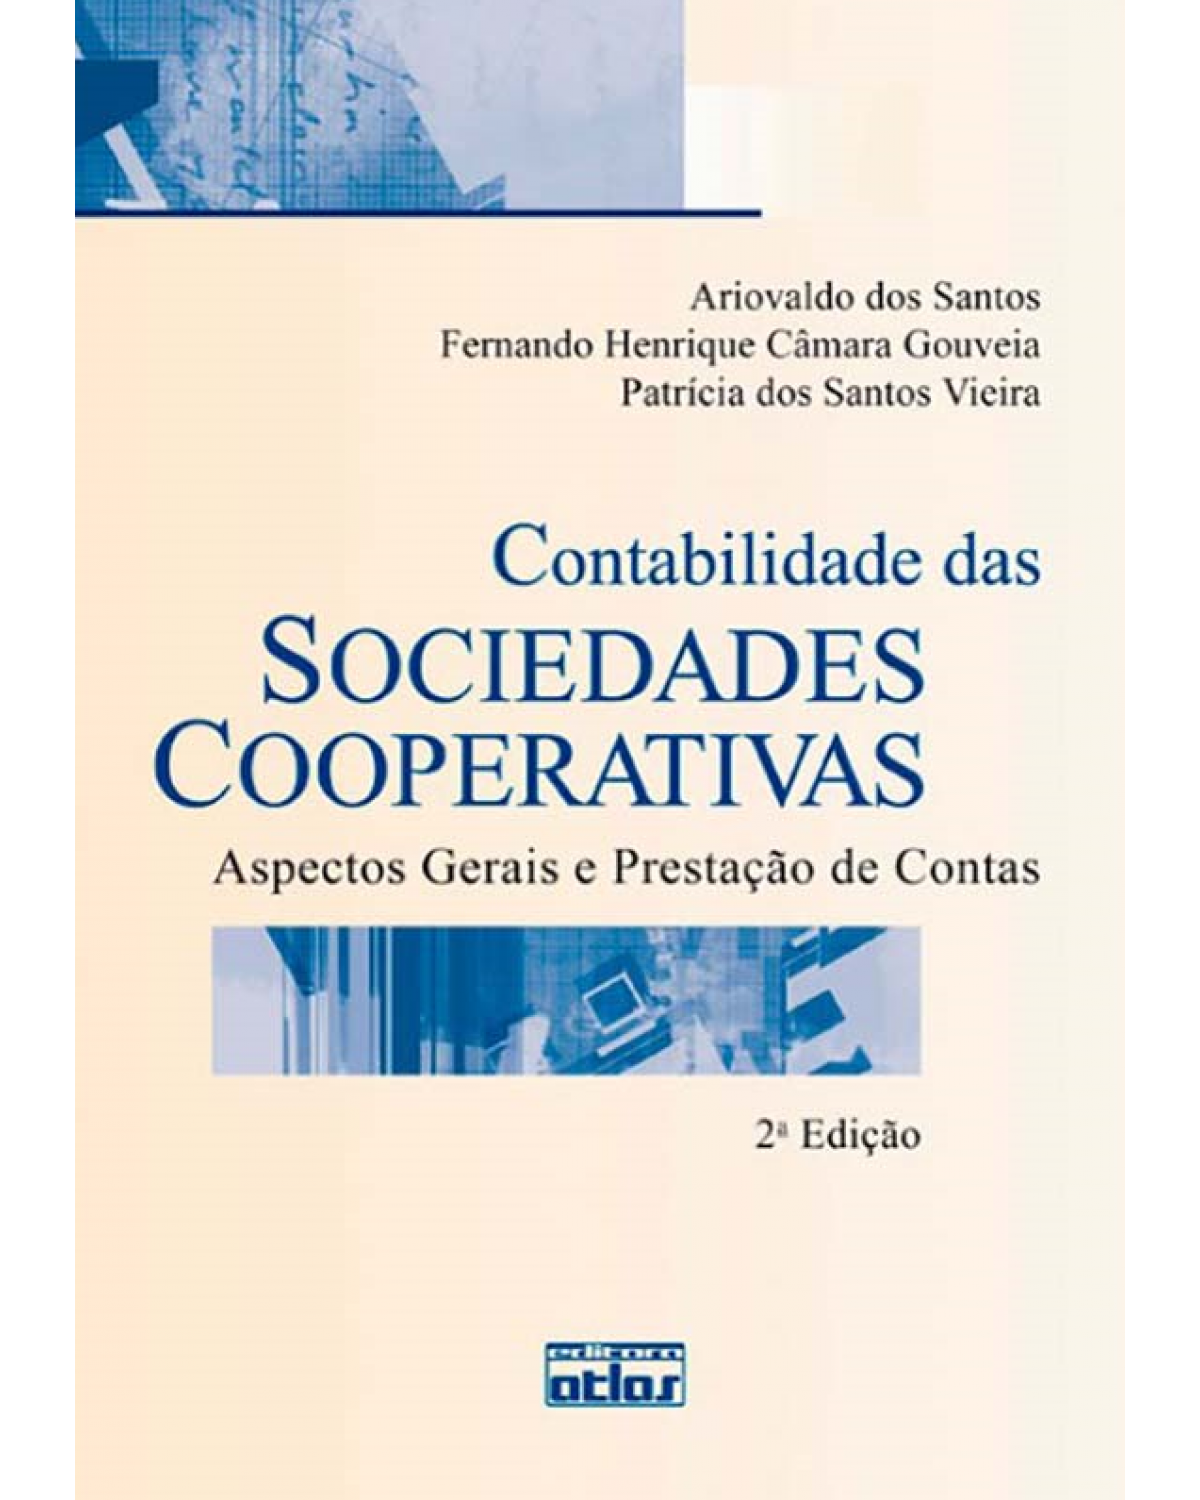 Contabilidade das sociedades cooperativas - Aspectos gerais e prestação de contas - 2ª Edição | 2012